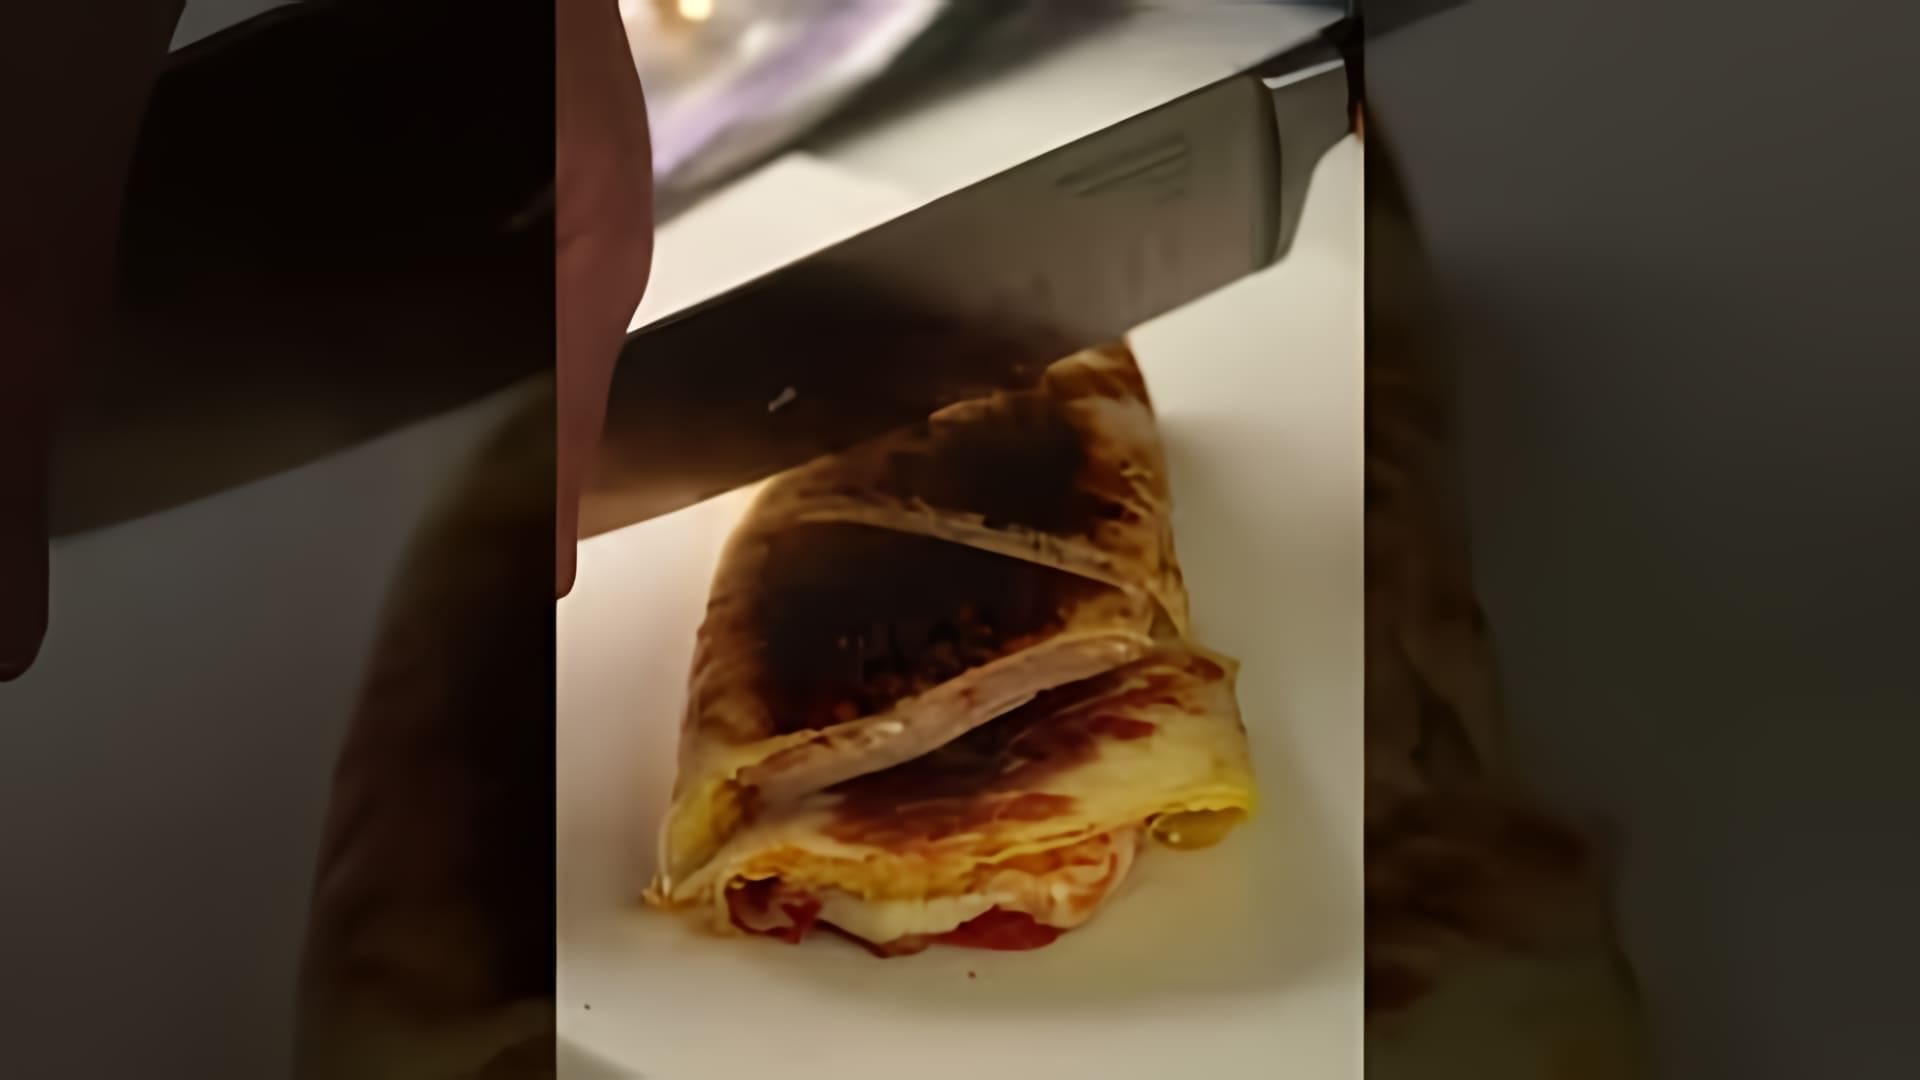 "Тортилья с начинкой: быстрый и вкусный завтрак" - это видео-ролик, который демонстрирует процесс приготовления вкусного и быстрого завтрака с использованием тортильи